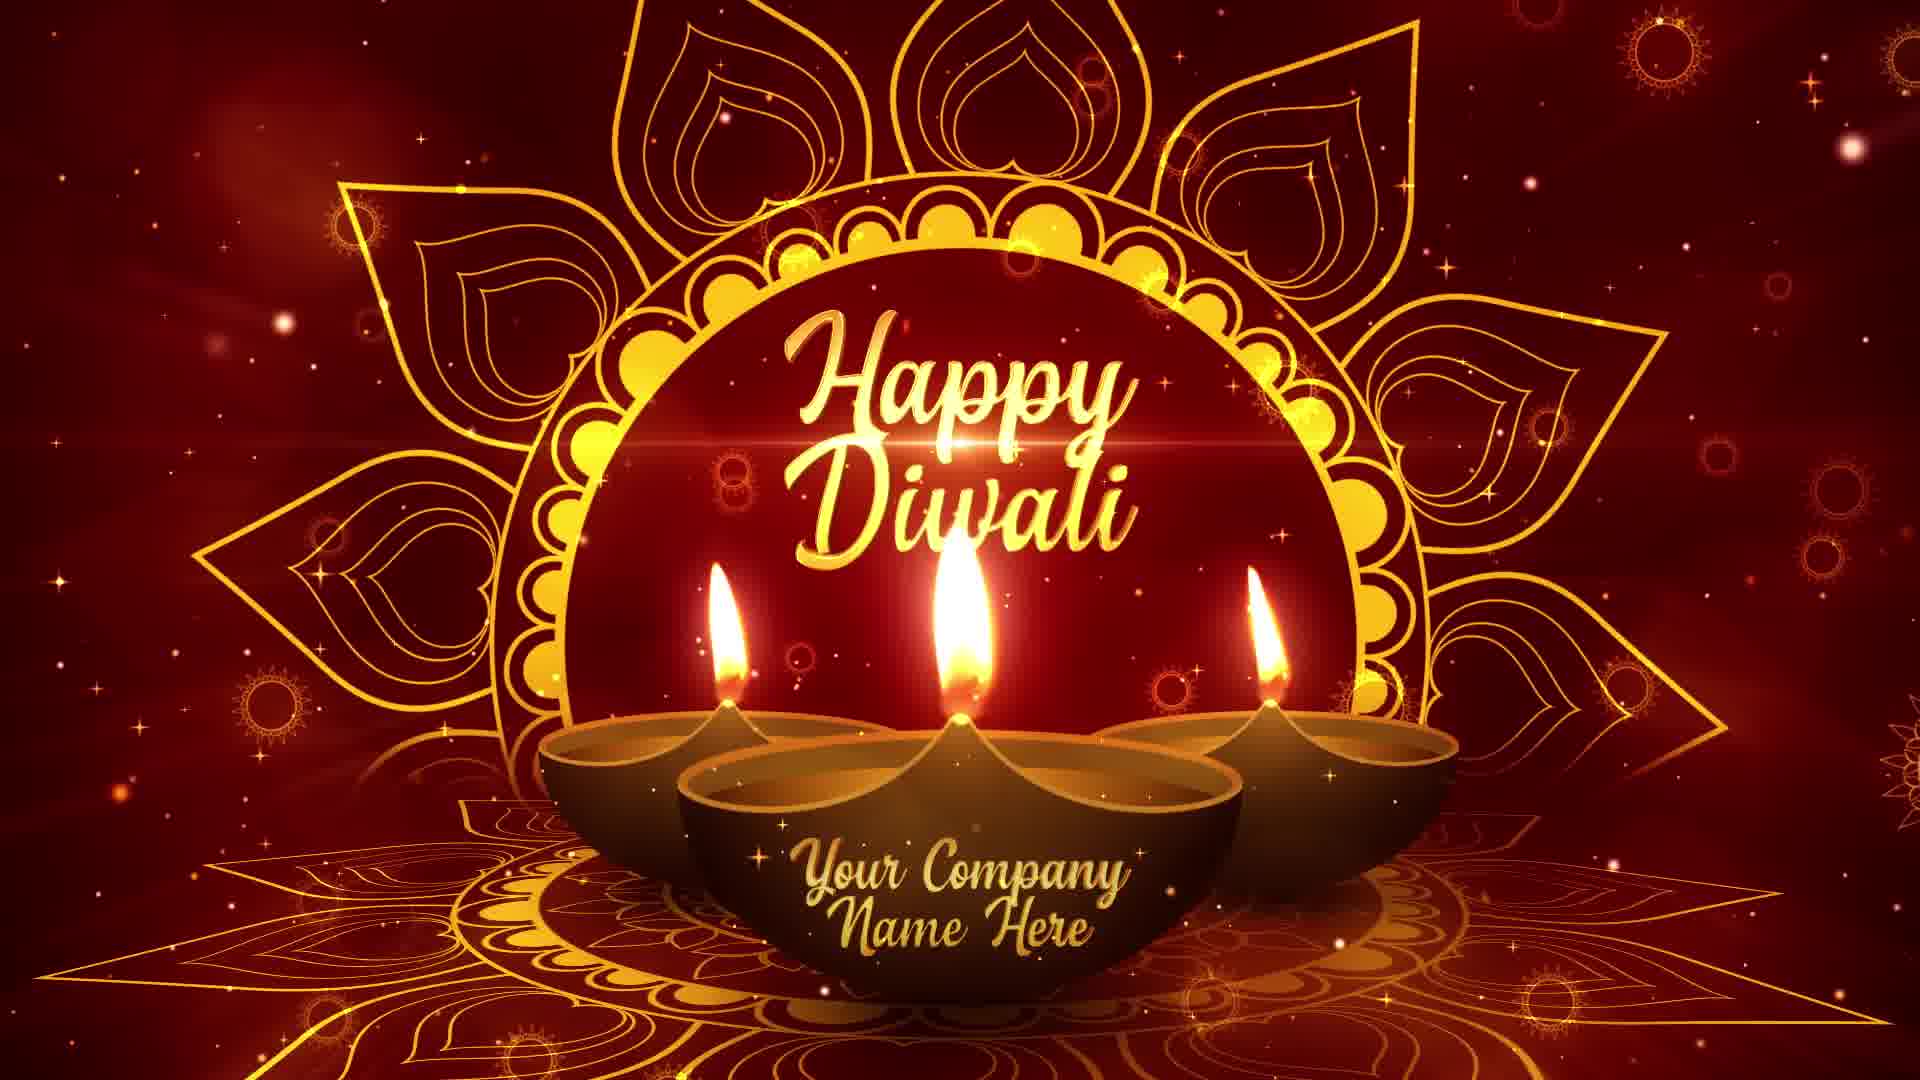 Diwali Festival Opener Premiere Pro Videohive 24824169 Premiere Pro Image 12